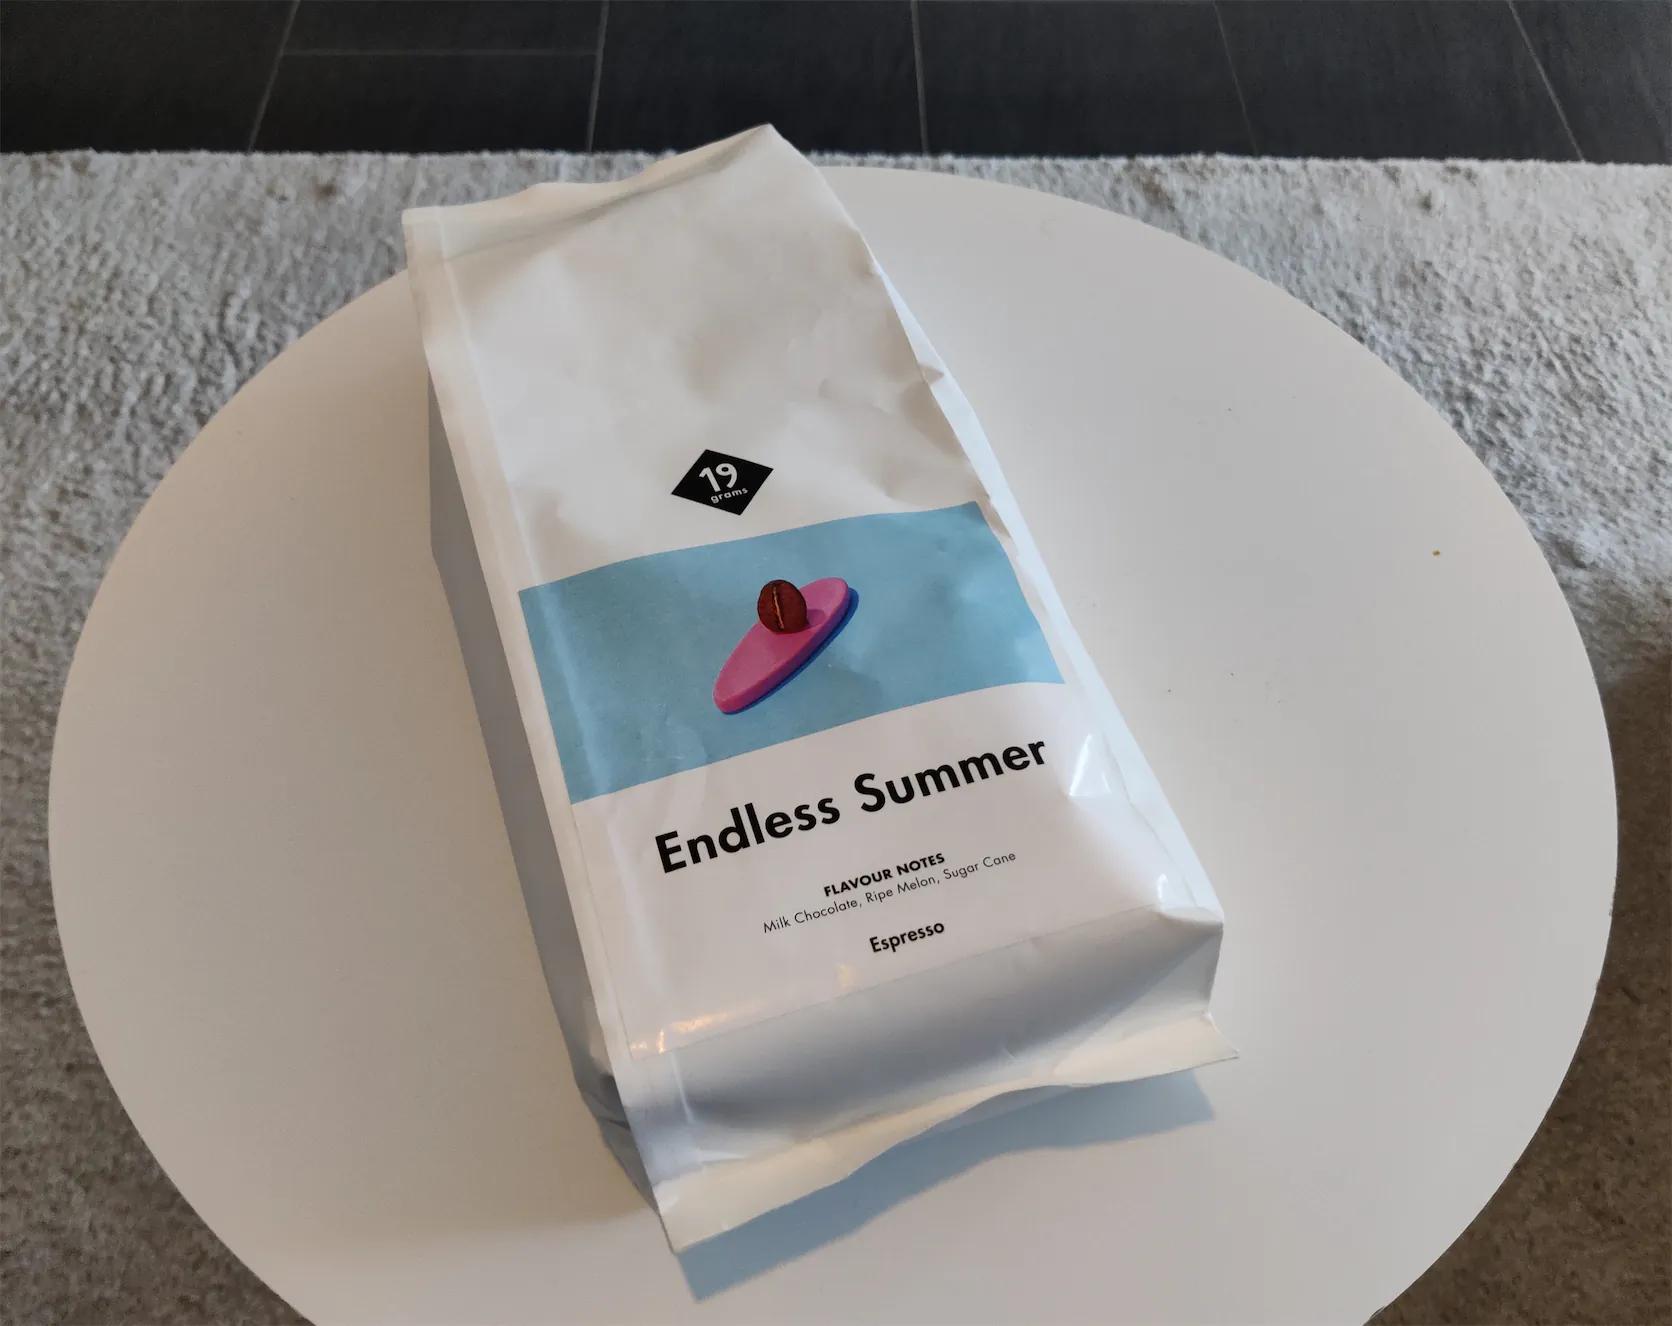 Kaffeeverpackung mit Kaffee "Endless Summer" von 19grams